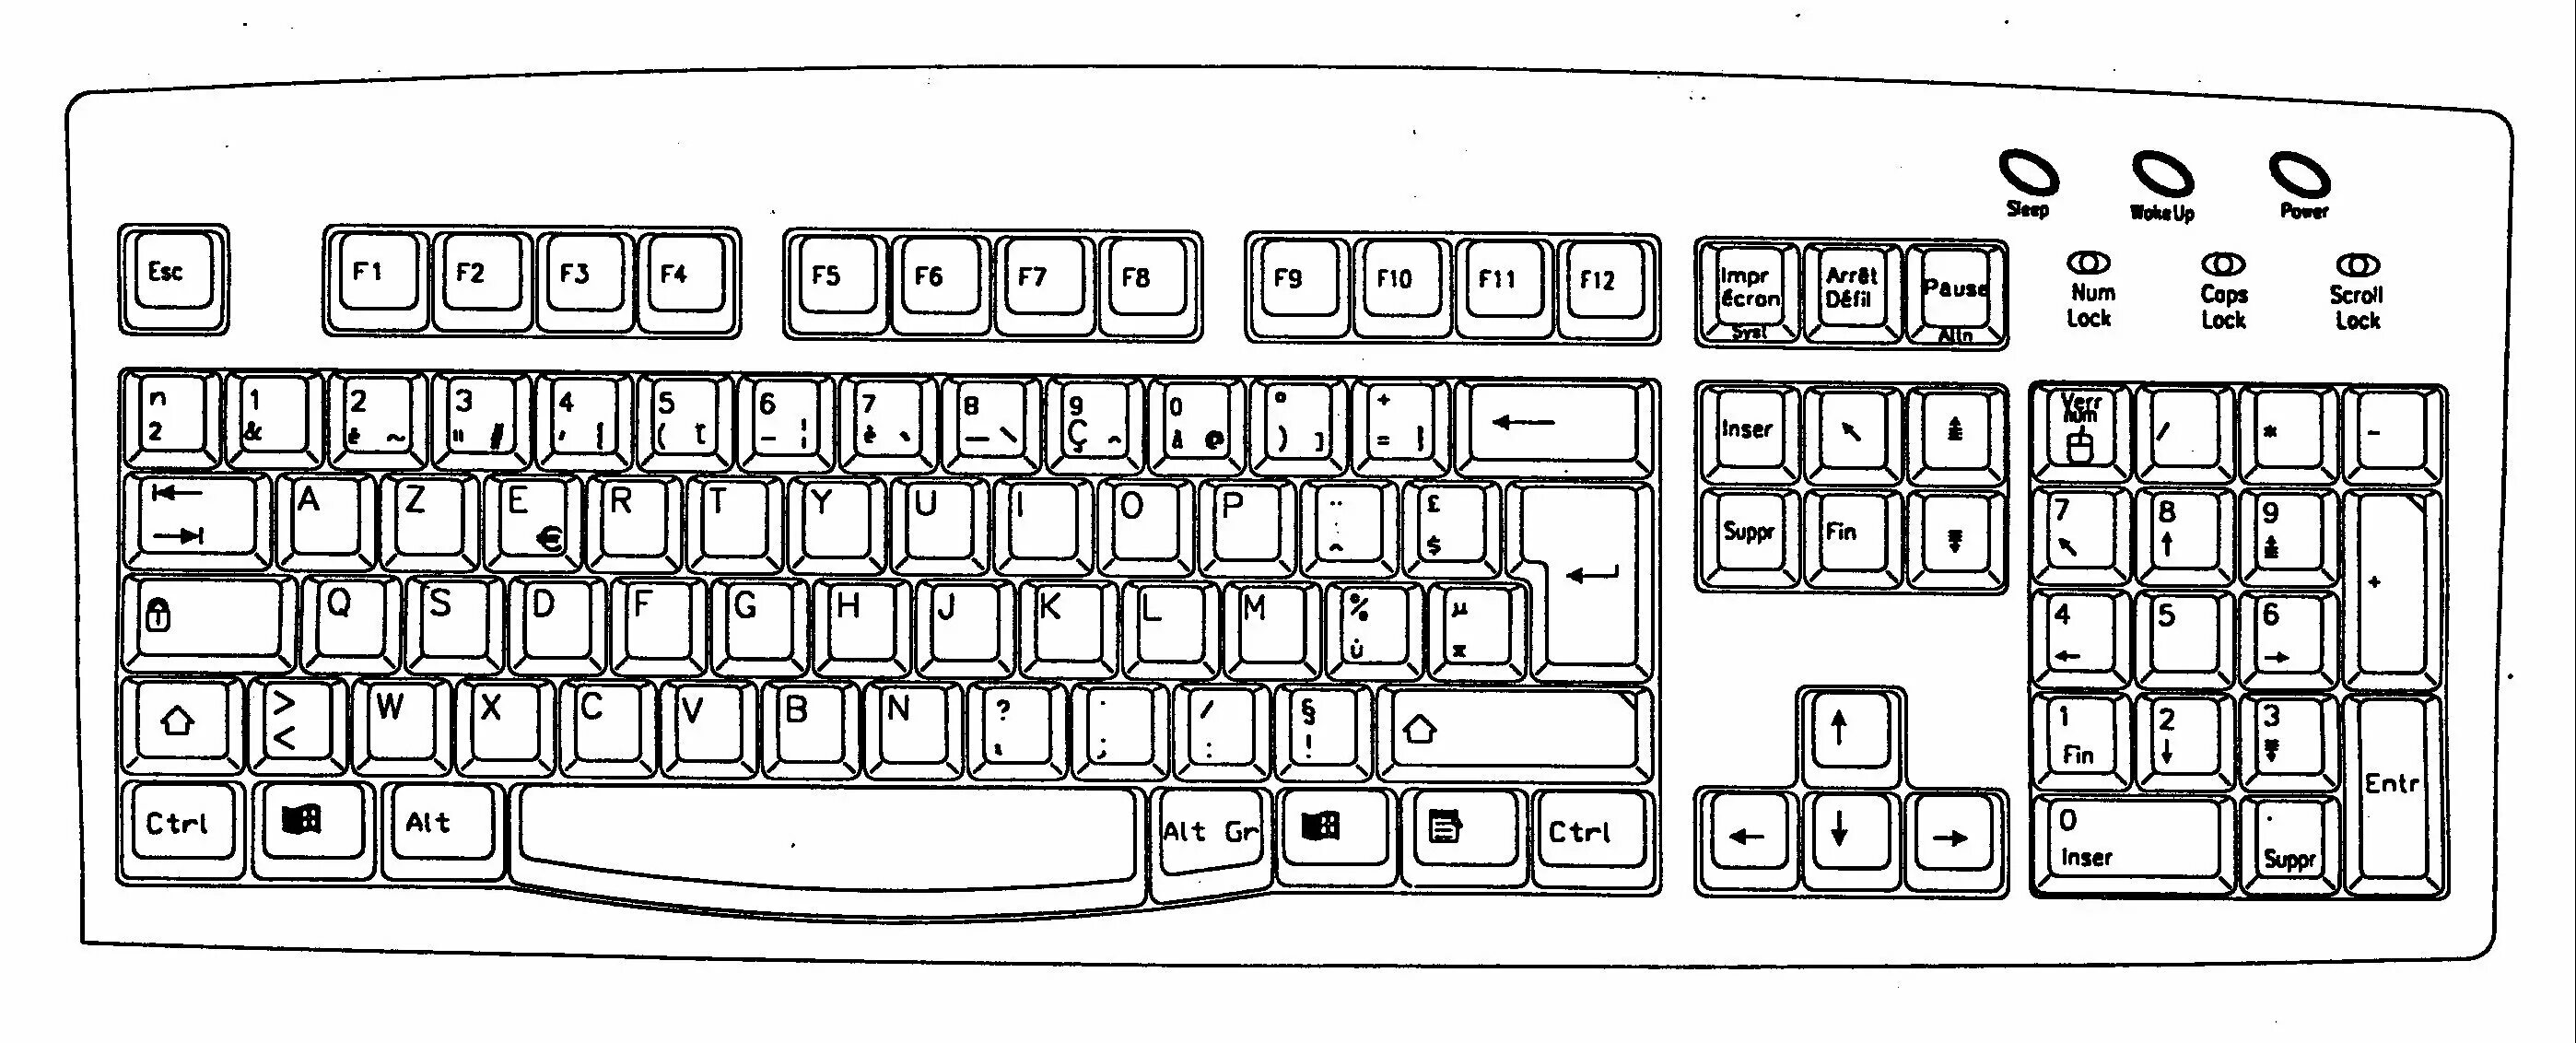 Распечатать раскладку клавиатуры компьютера. Клавиатура схема расположения клавиш. Схема клавиатуры компьютера игровая. Клавиатура 80 % схема раскладки. Чертеж клавиатуры компьютера.